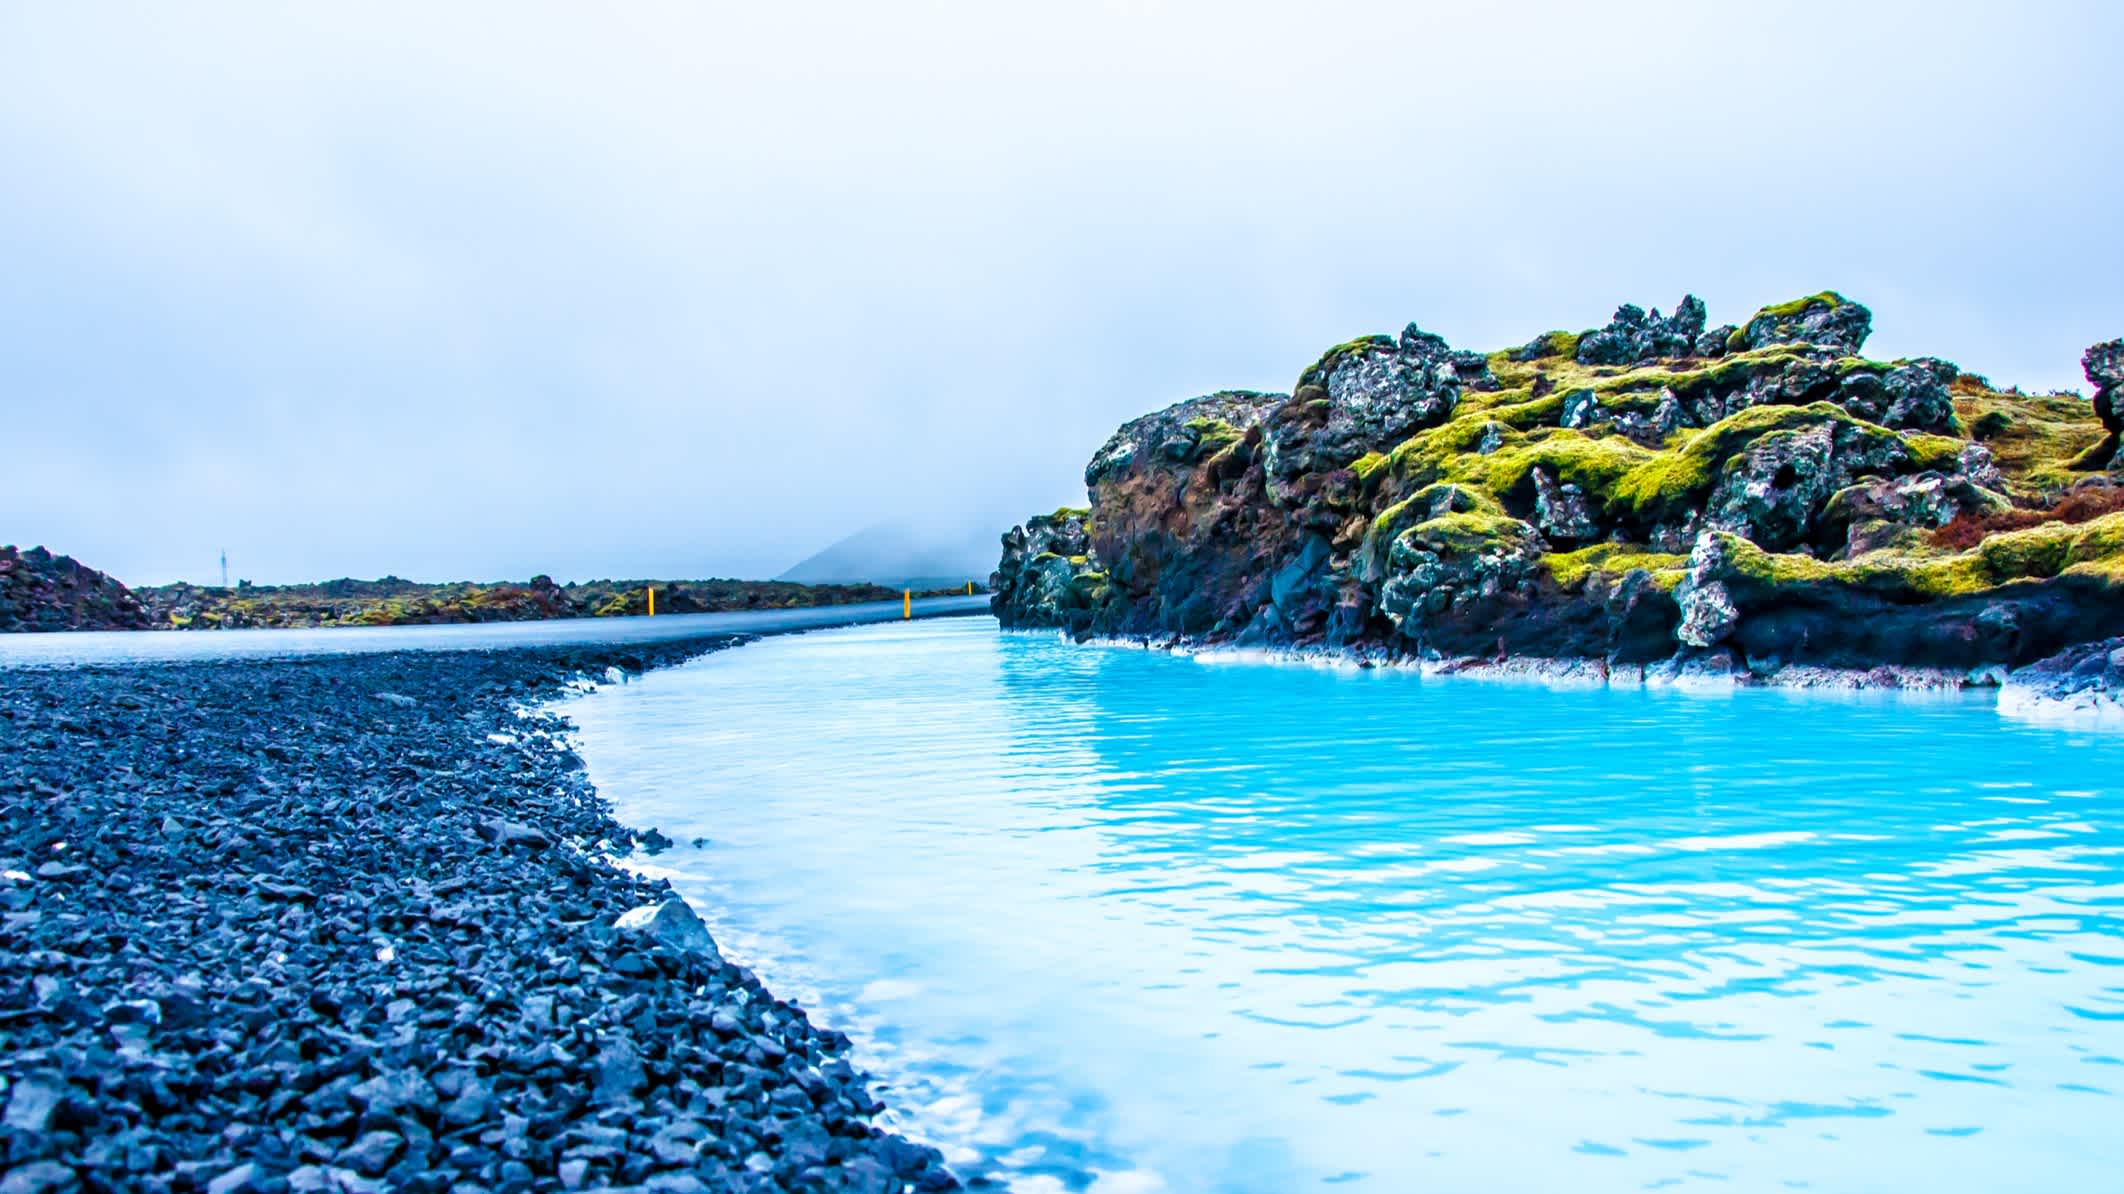 Die Blaue Lagune in Island mit schwarzem Kieselstrand und mossbewachsenen Steinen